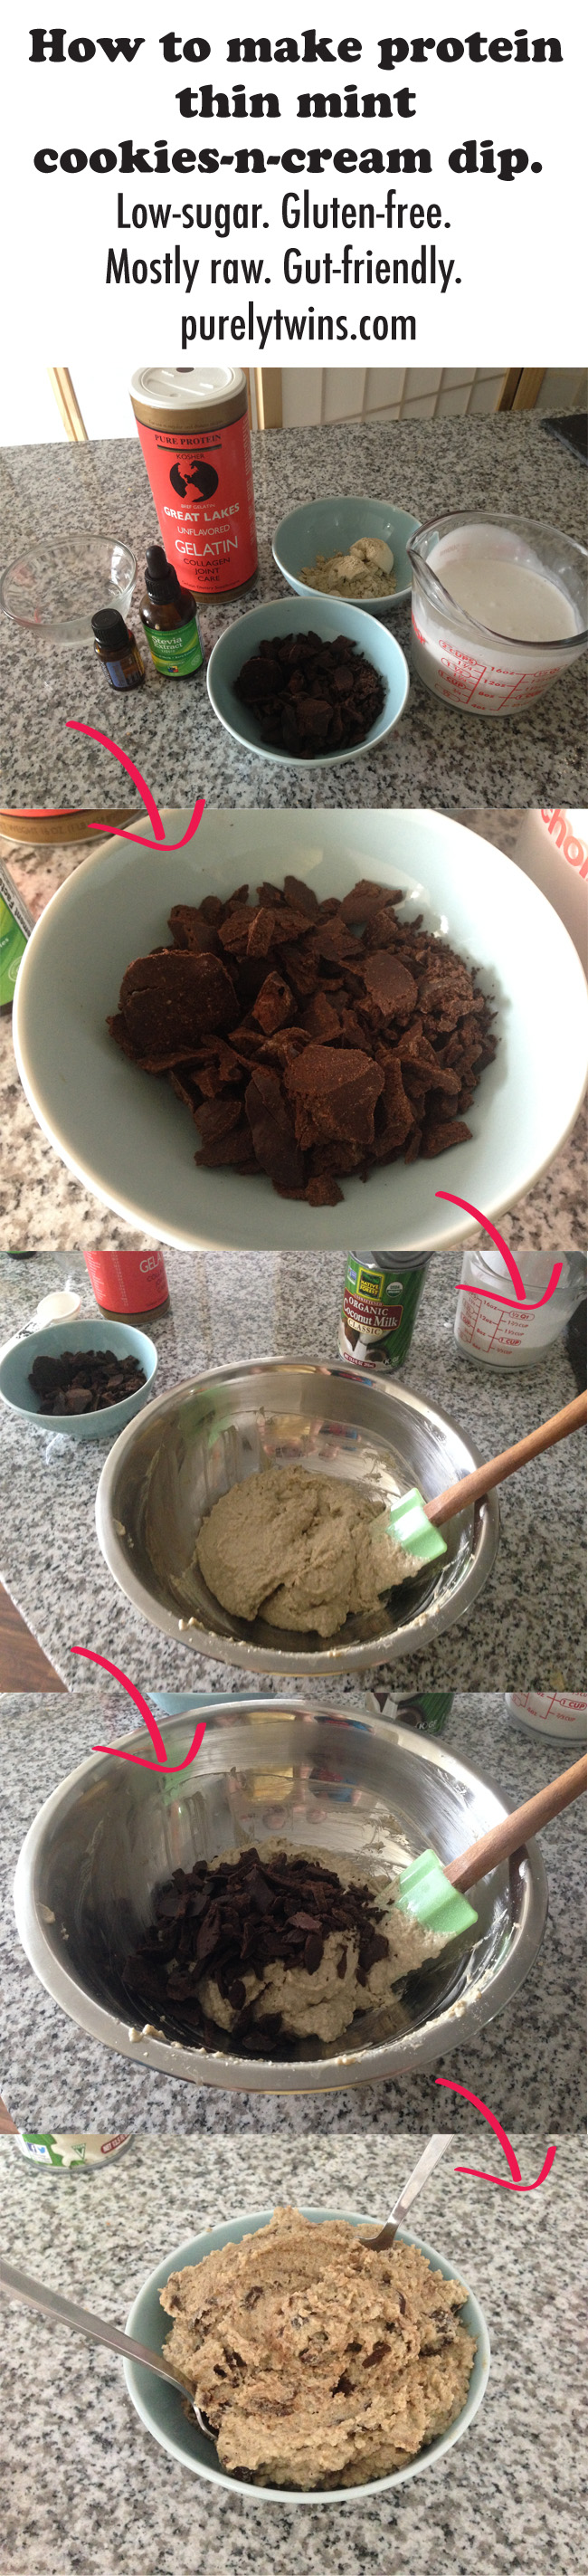 High protein thin mint cookies-n-cream dip (gut-friendly)